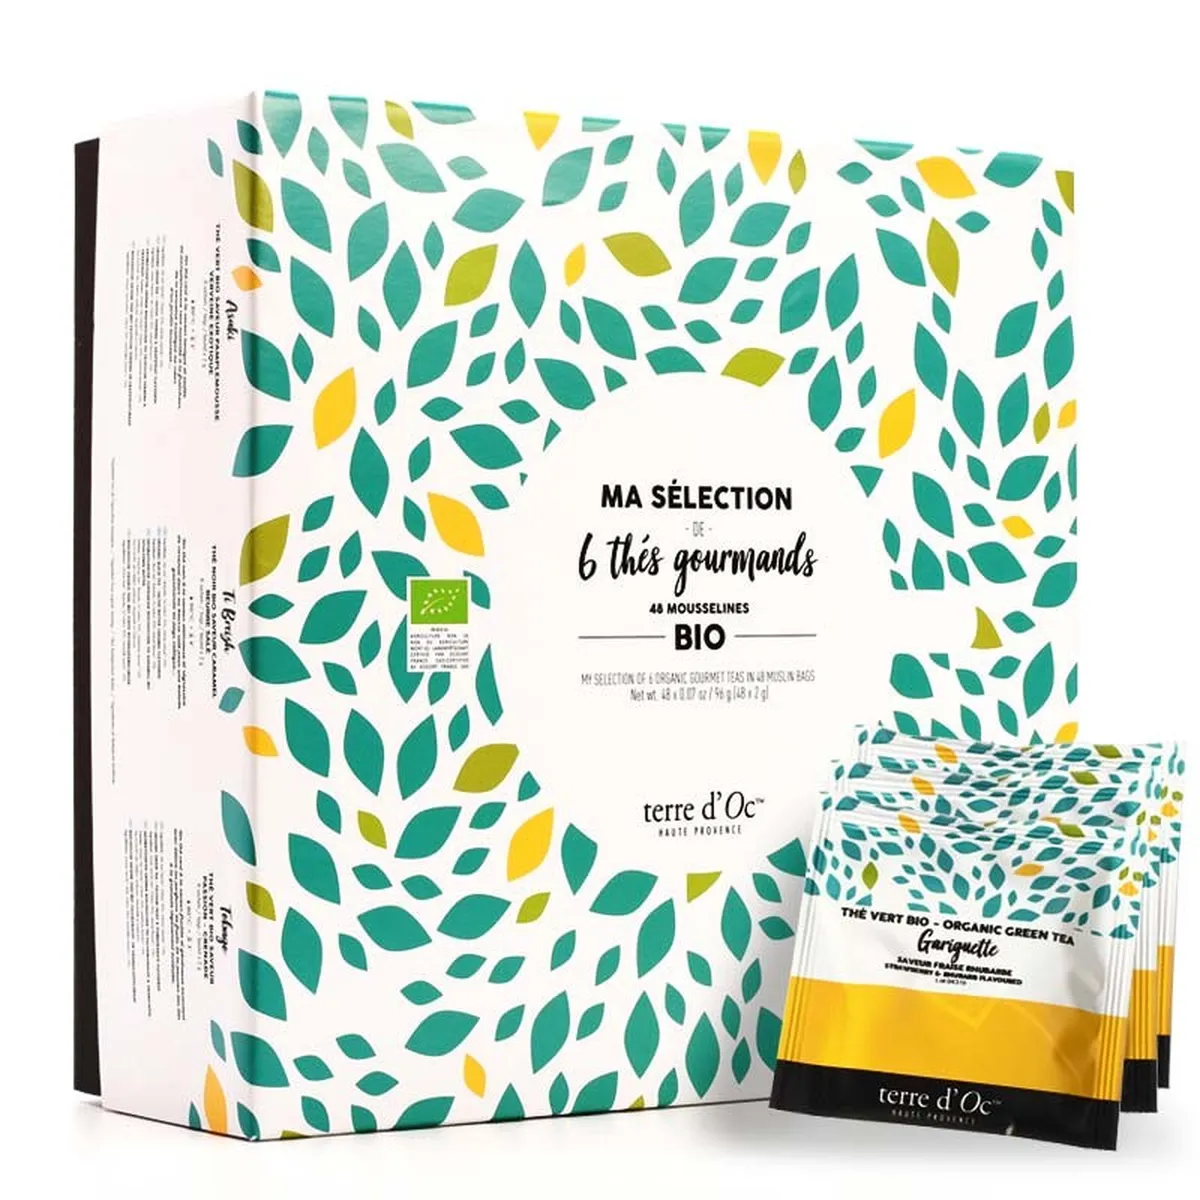 Box of 48 organic gourmet tea bags from Terre d'Oc